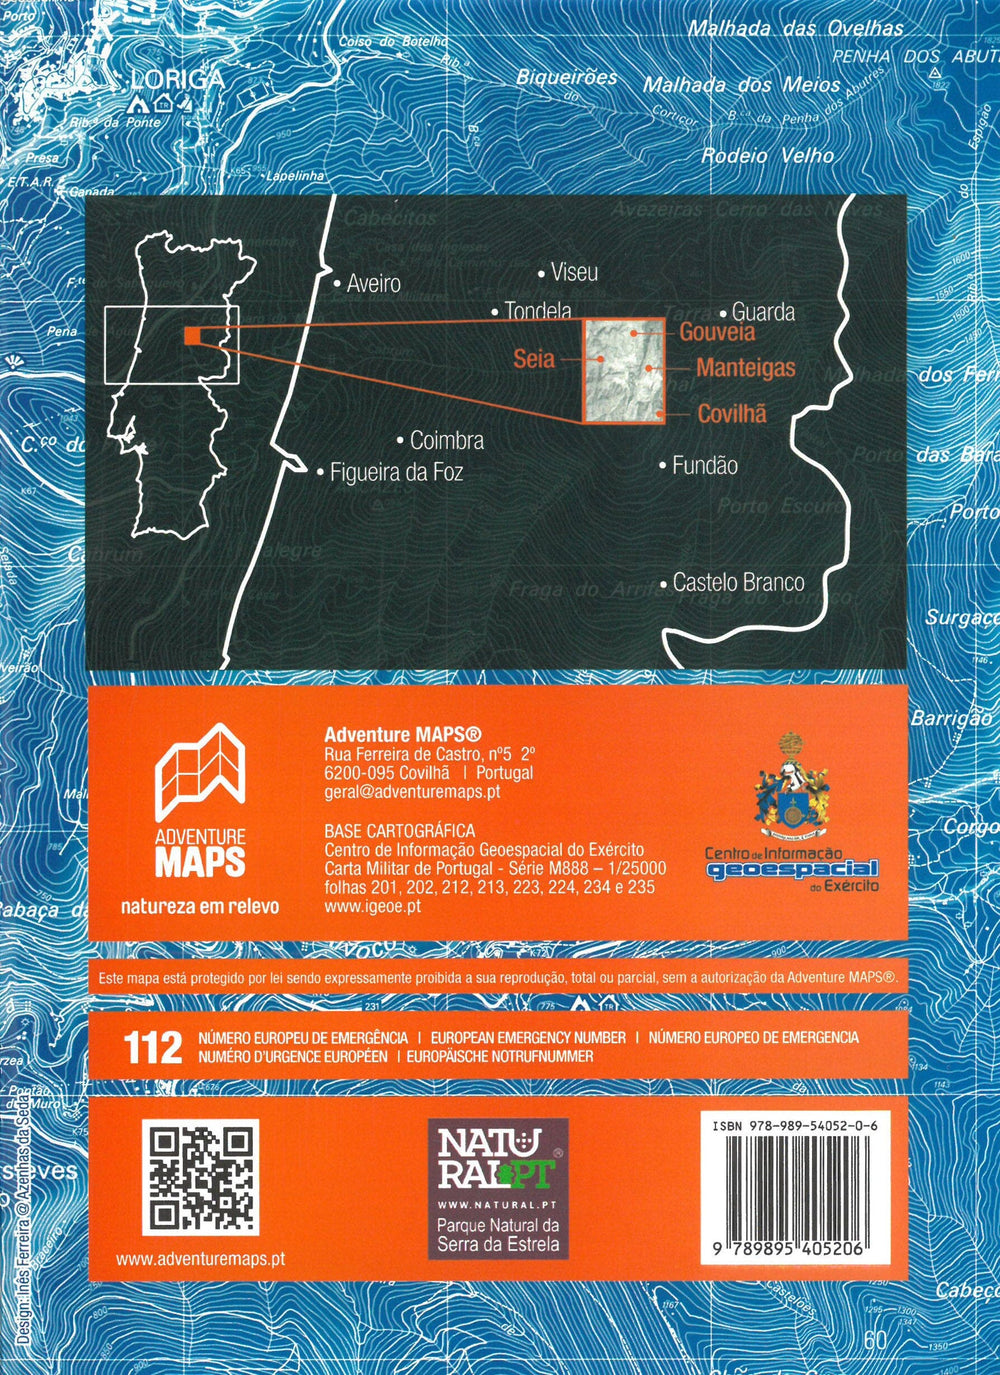 Carte topographique - Parque Natural da Serra da Estrela (Portugal) | Adventure Maps carte pliée Adventure Maps 